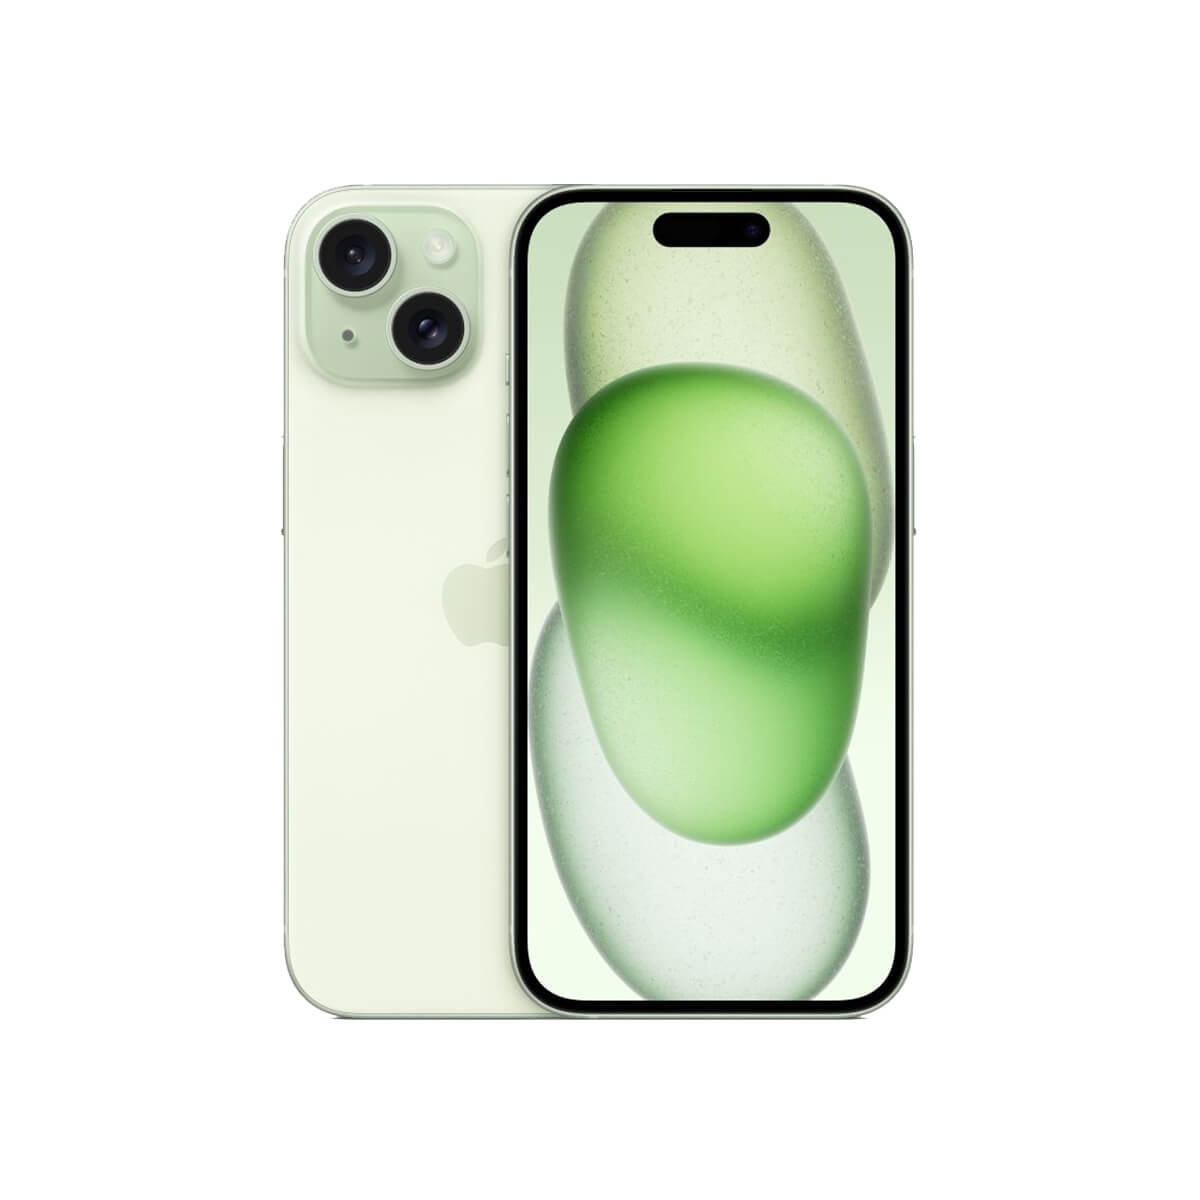 iPhone 15 256G 綠色